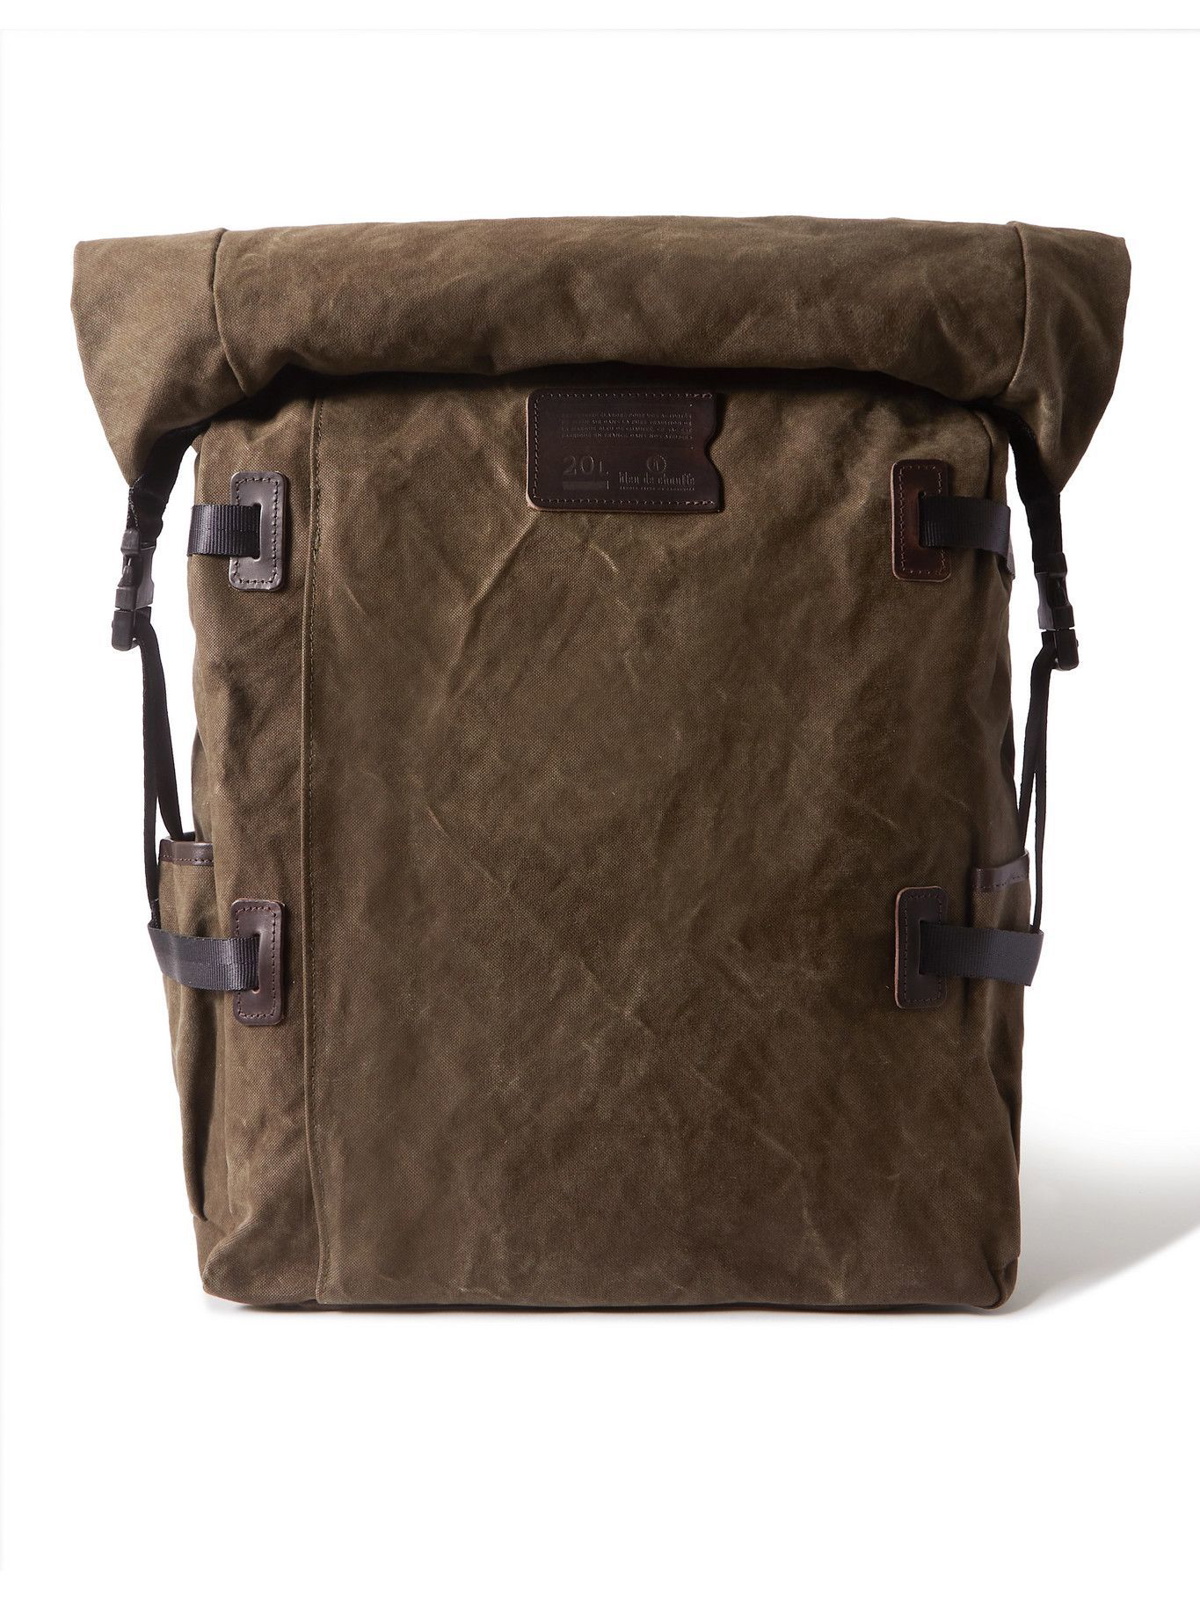 Zibeline Backpack - Dark Brown - vintage men's backpack